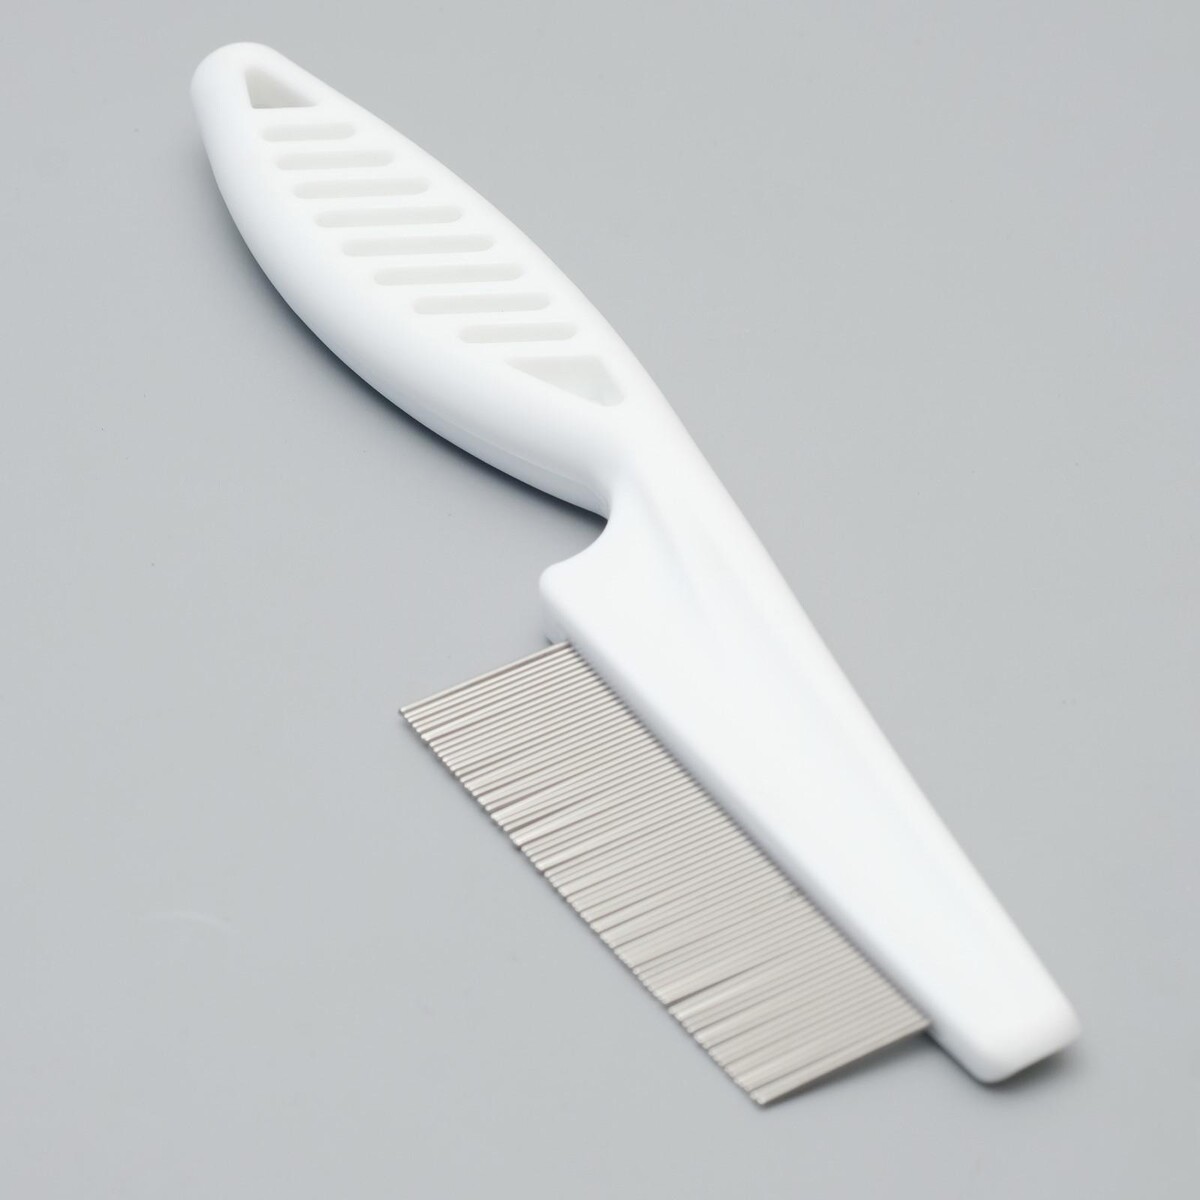 Расческа с частыми зубьями, 18 см, пластиковая ручка, белая расческа массажная с пластик зубьями малая 15см 301 001 7